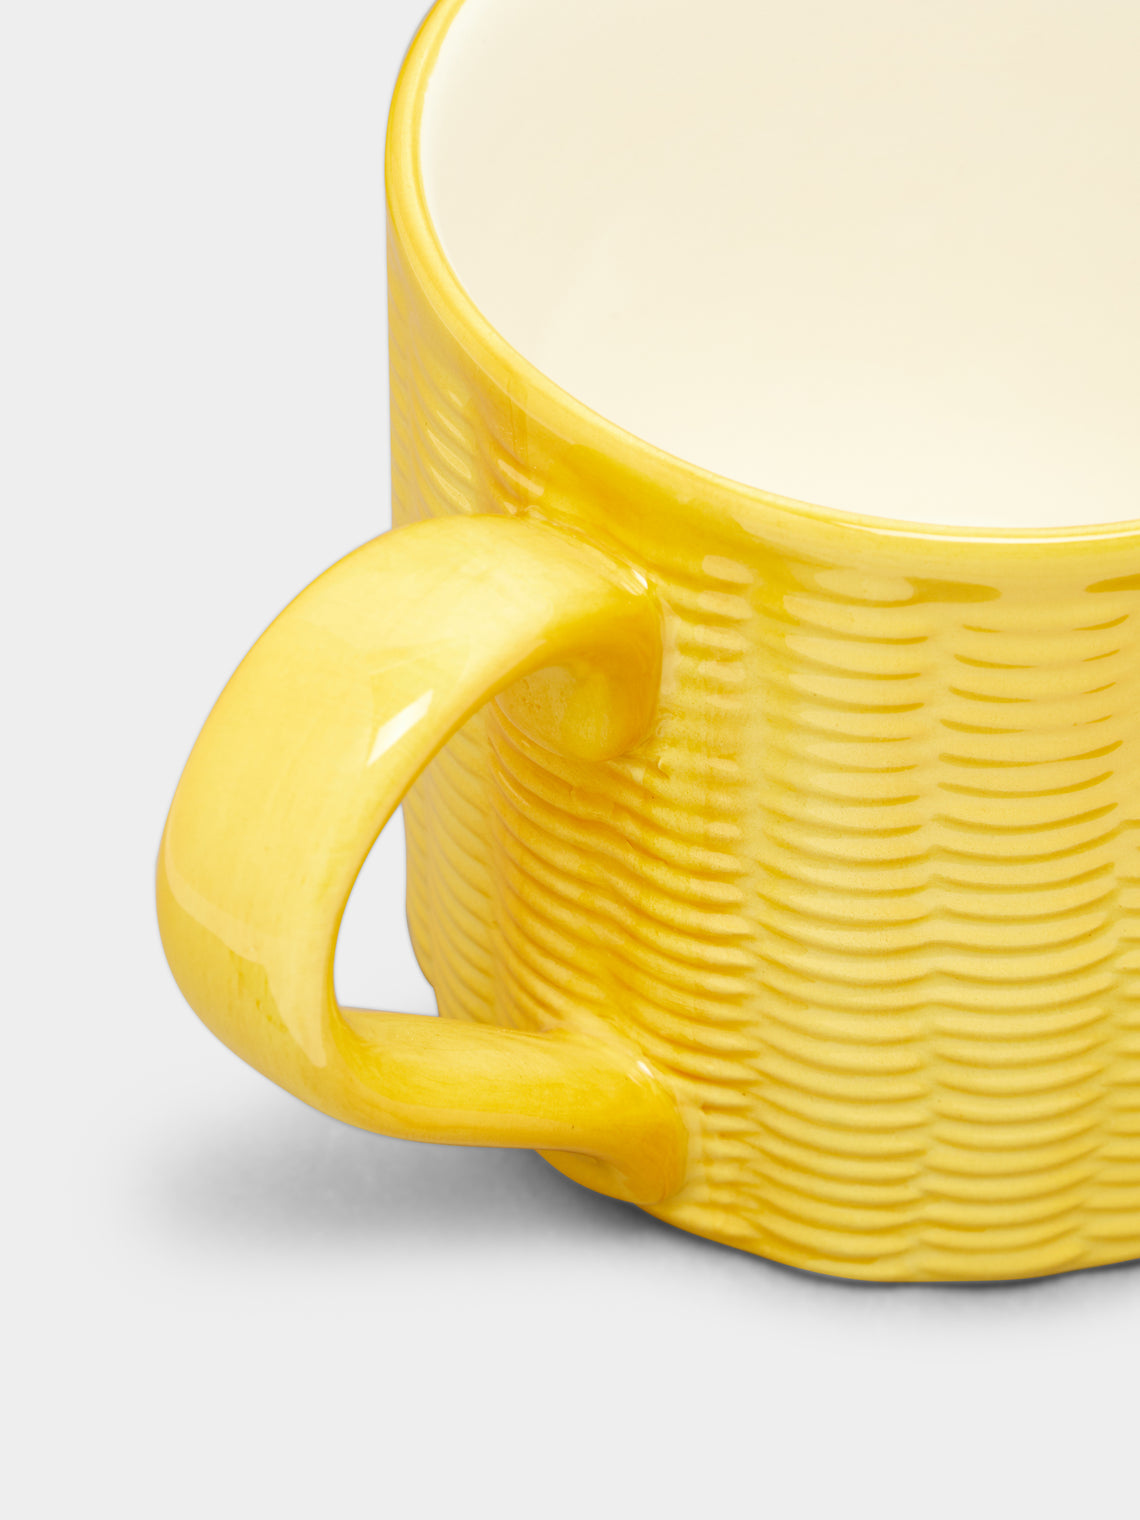 Este Ceramiche - Wicker Hand-Painted Ceramic Mugs (Set of 4) -  - ABASK